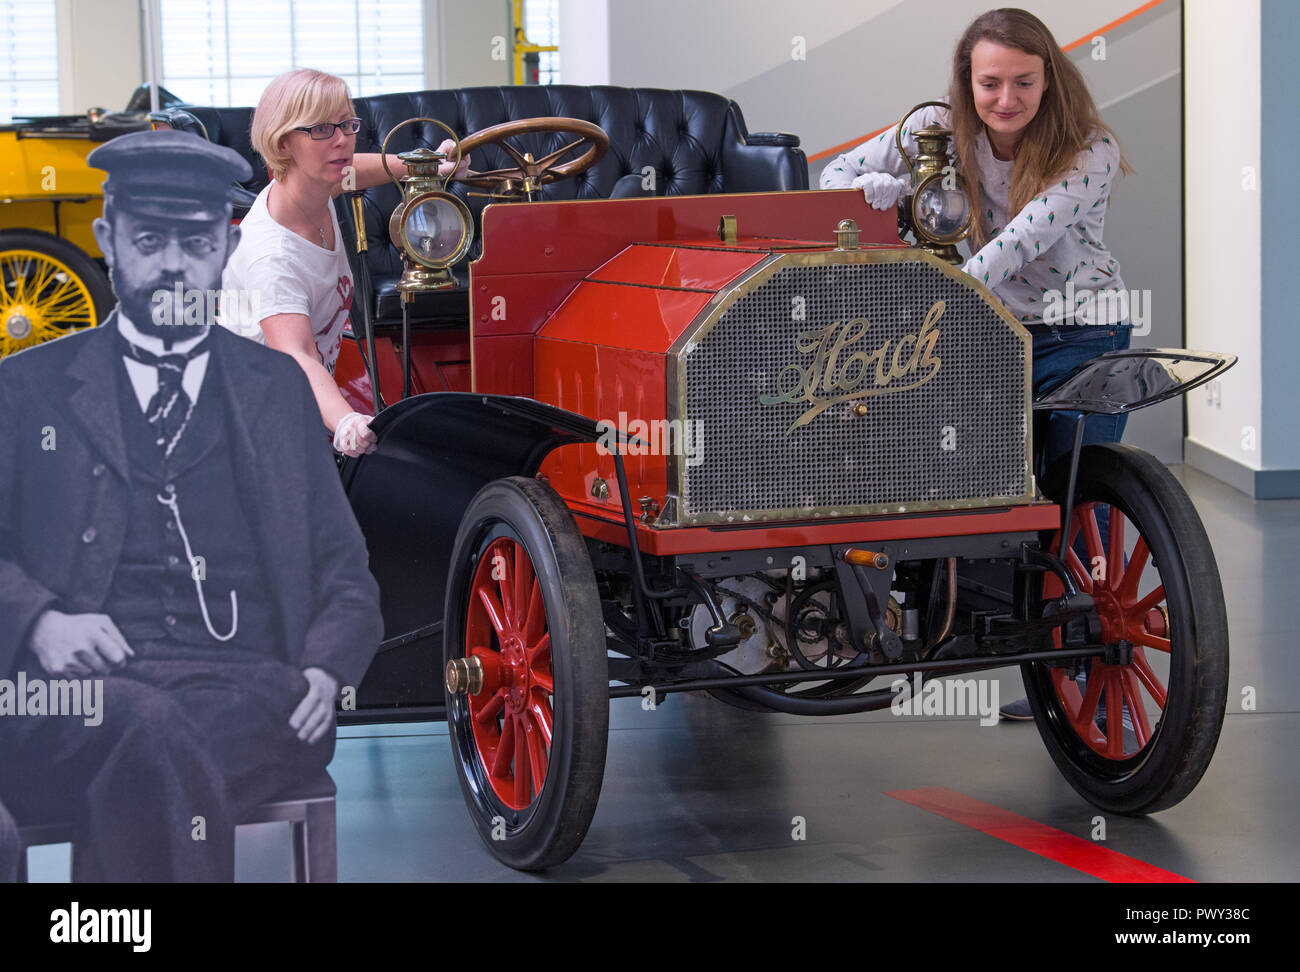 18 octobre 2018, Saxe, Zwickau : Deux employés de la Musée Août Horch à Zwickau pousser un "modèle Horch 2' avec 12 ch en position à côté d'un portrait d'August Horch (l). Le musée de l'automobile a une exposition spéciale commémorant le 150e anniversaire de son homonyme. Le spectacle retrace la vie de l'ingénieur, né à Winningen le 12 octobre 1868, à partir de son enfance jusqu'à sa mort en 1951. Horch fonde son usine automobile à Zwickau en 1904. L'exposition peut être vu du 20 octobre au 27 janvier 2019. Photo : Hendrik Schmidt/dpa-Zentralbild/dpa Banque D'Images